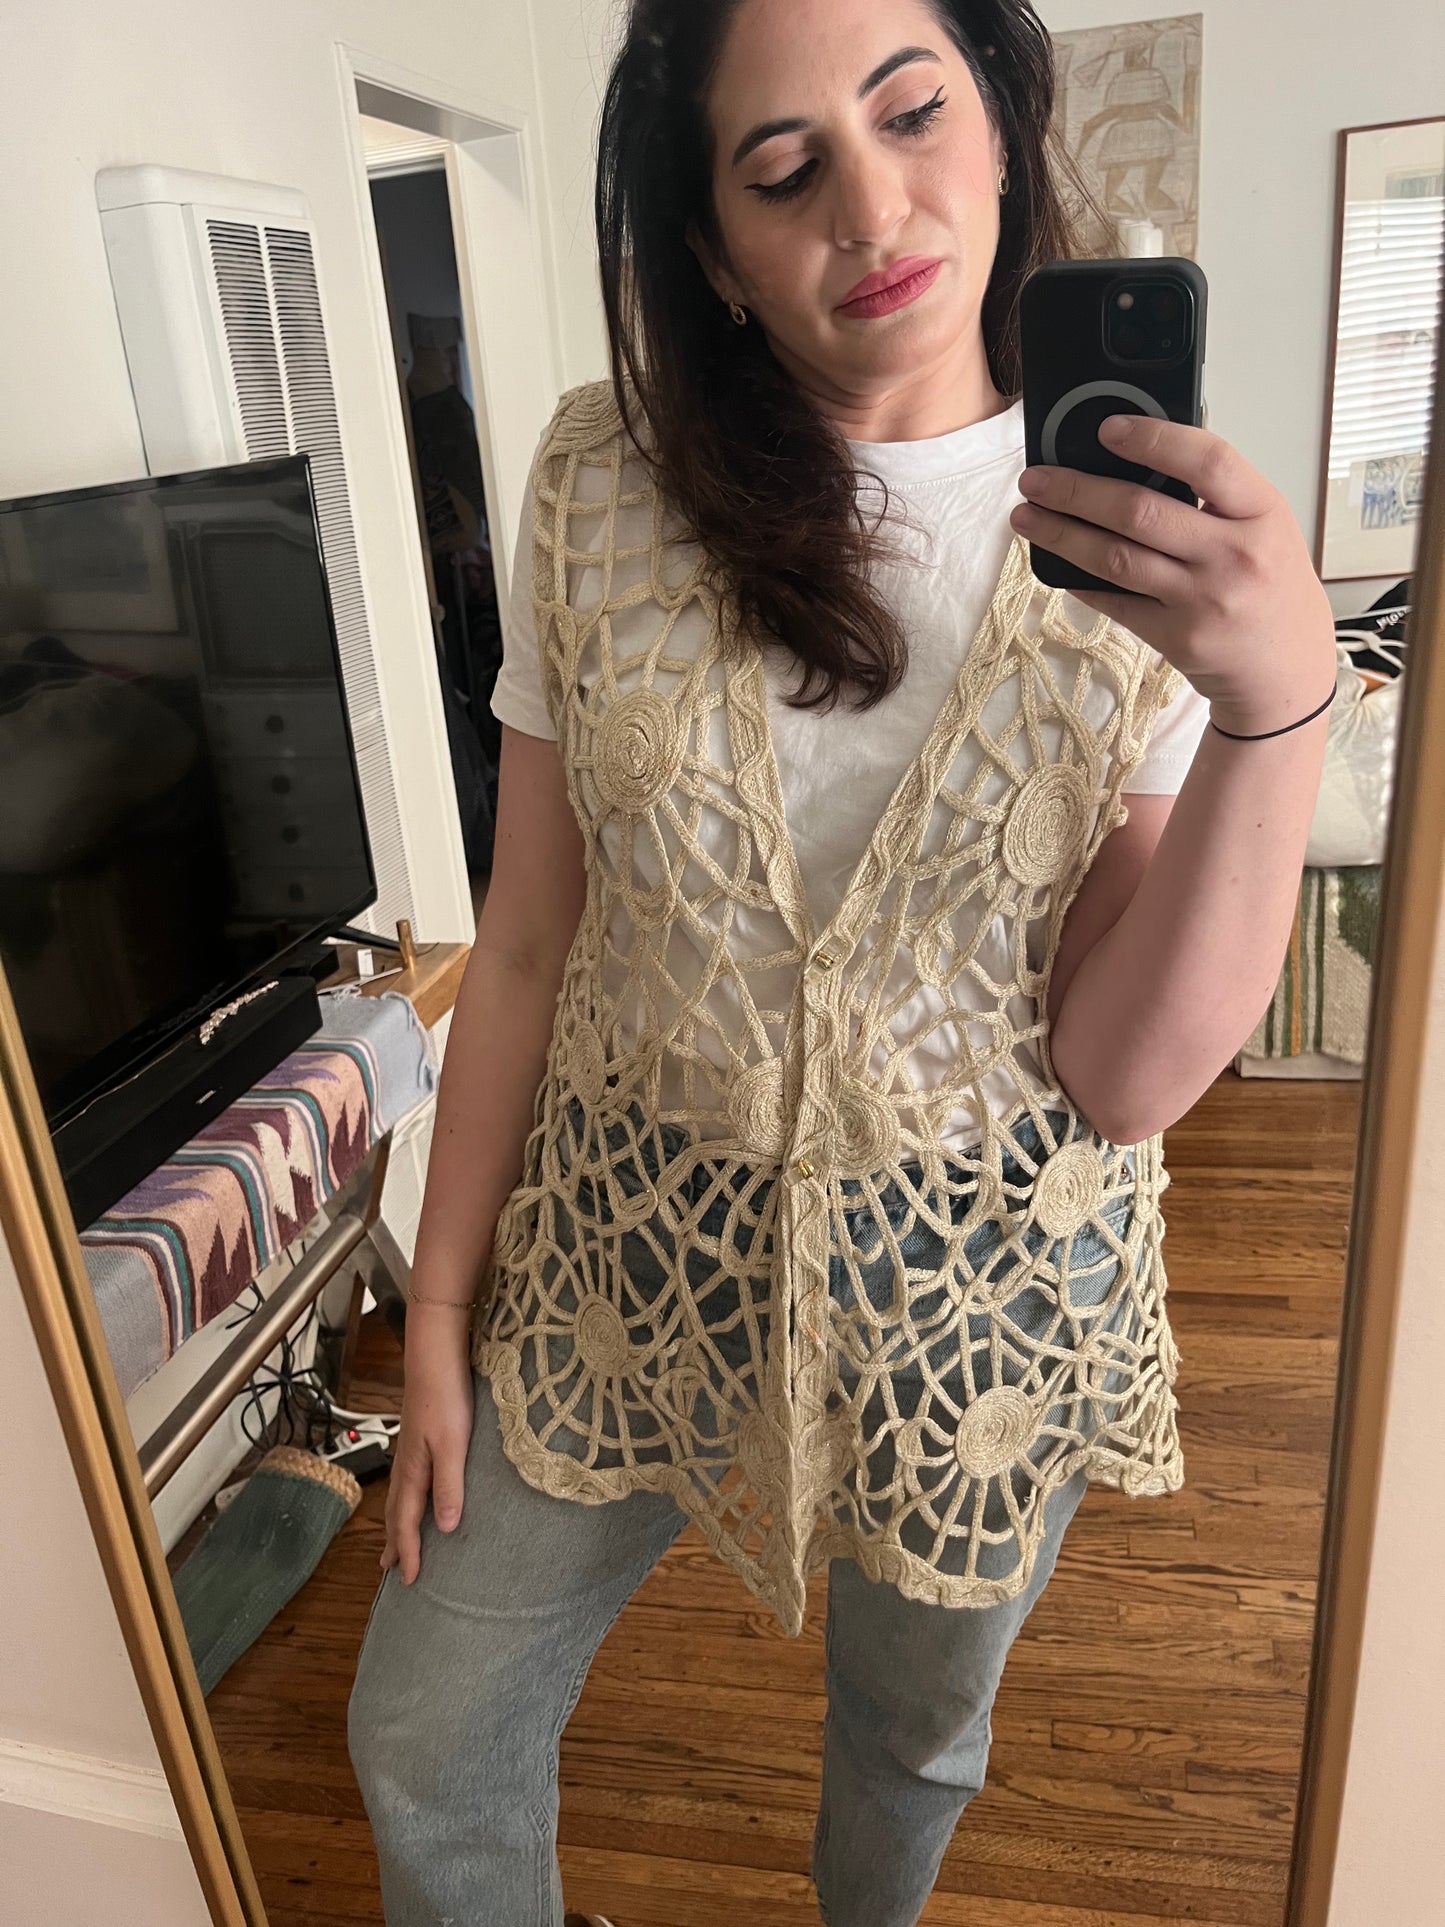 Cream Crochet Gold Metallic Vest